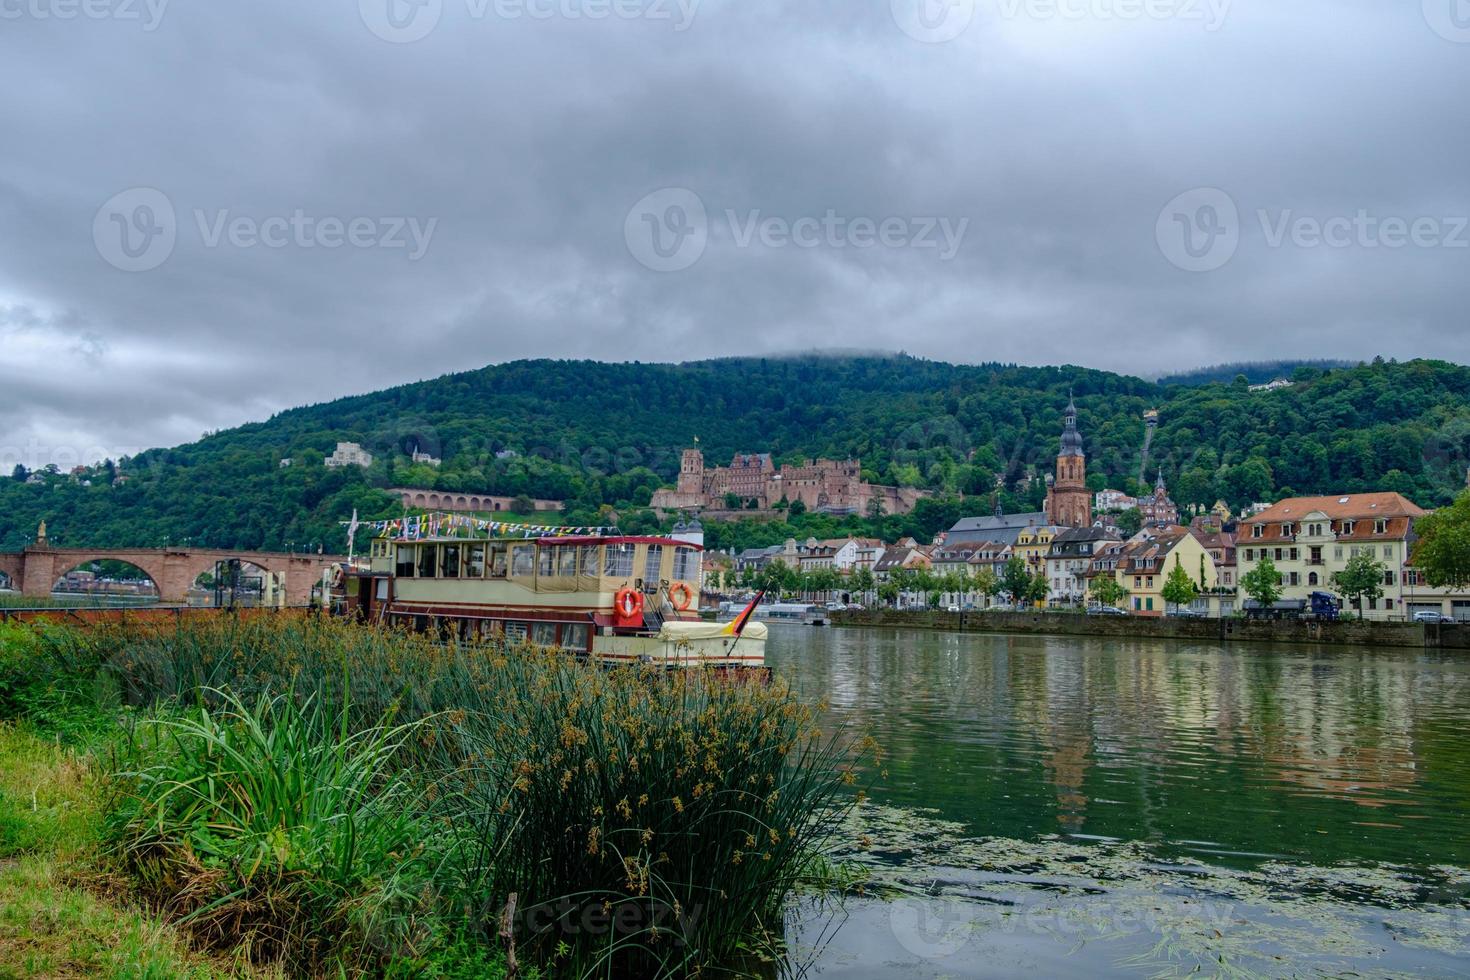 vista da bela cidade medieval de heidelberg e do rio neckar, alemanha foto